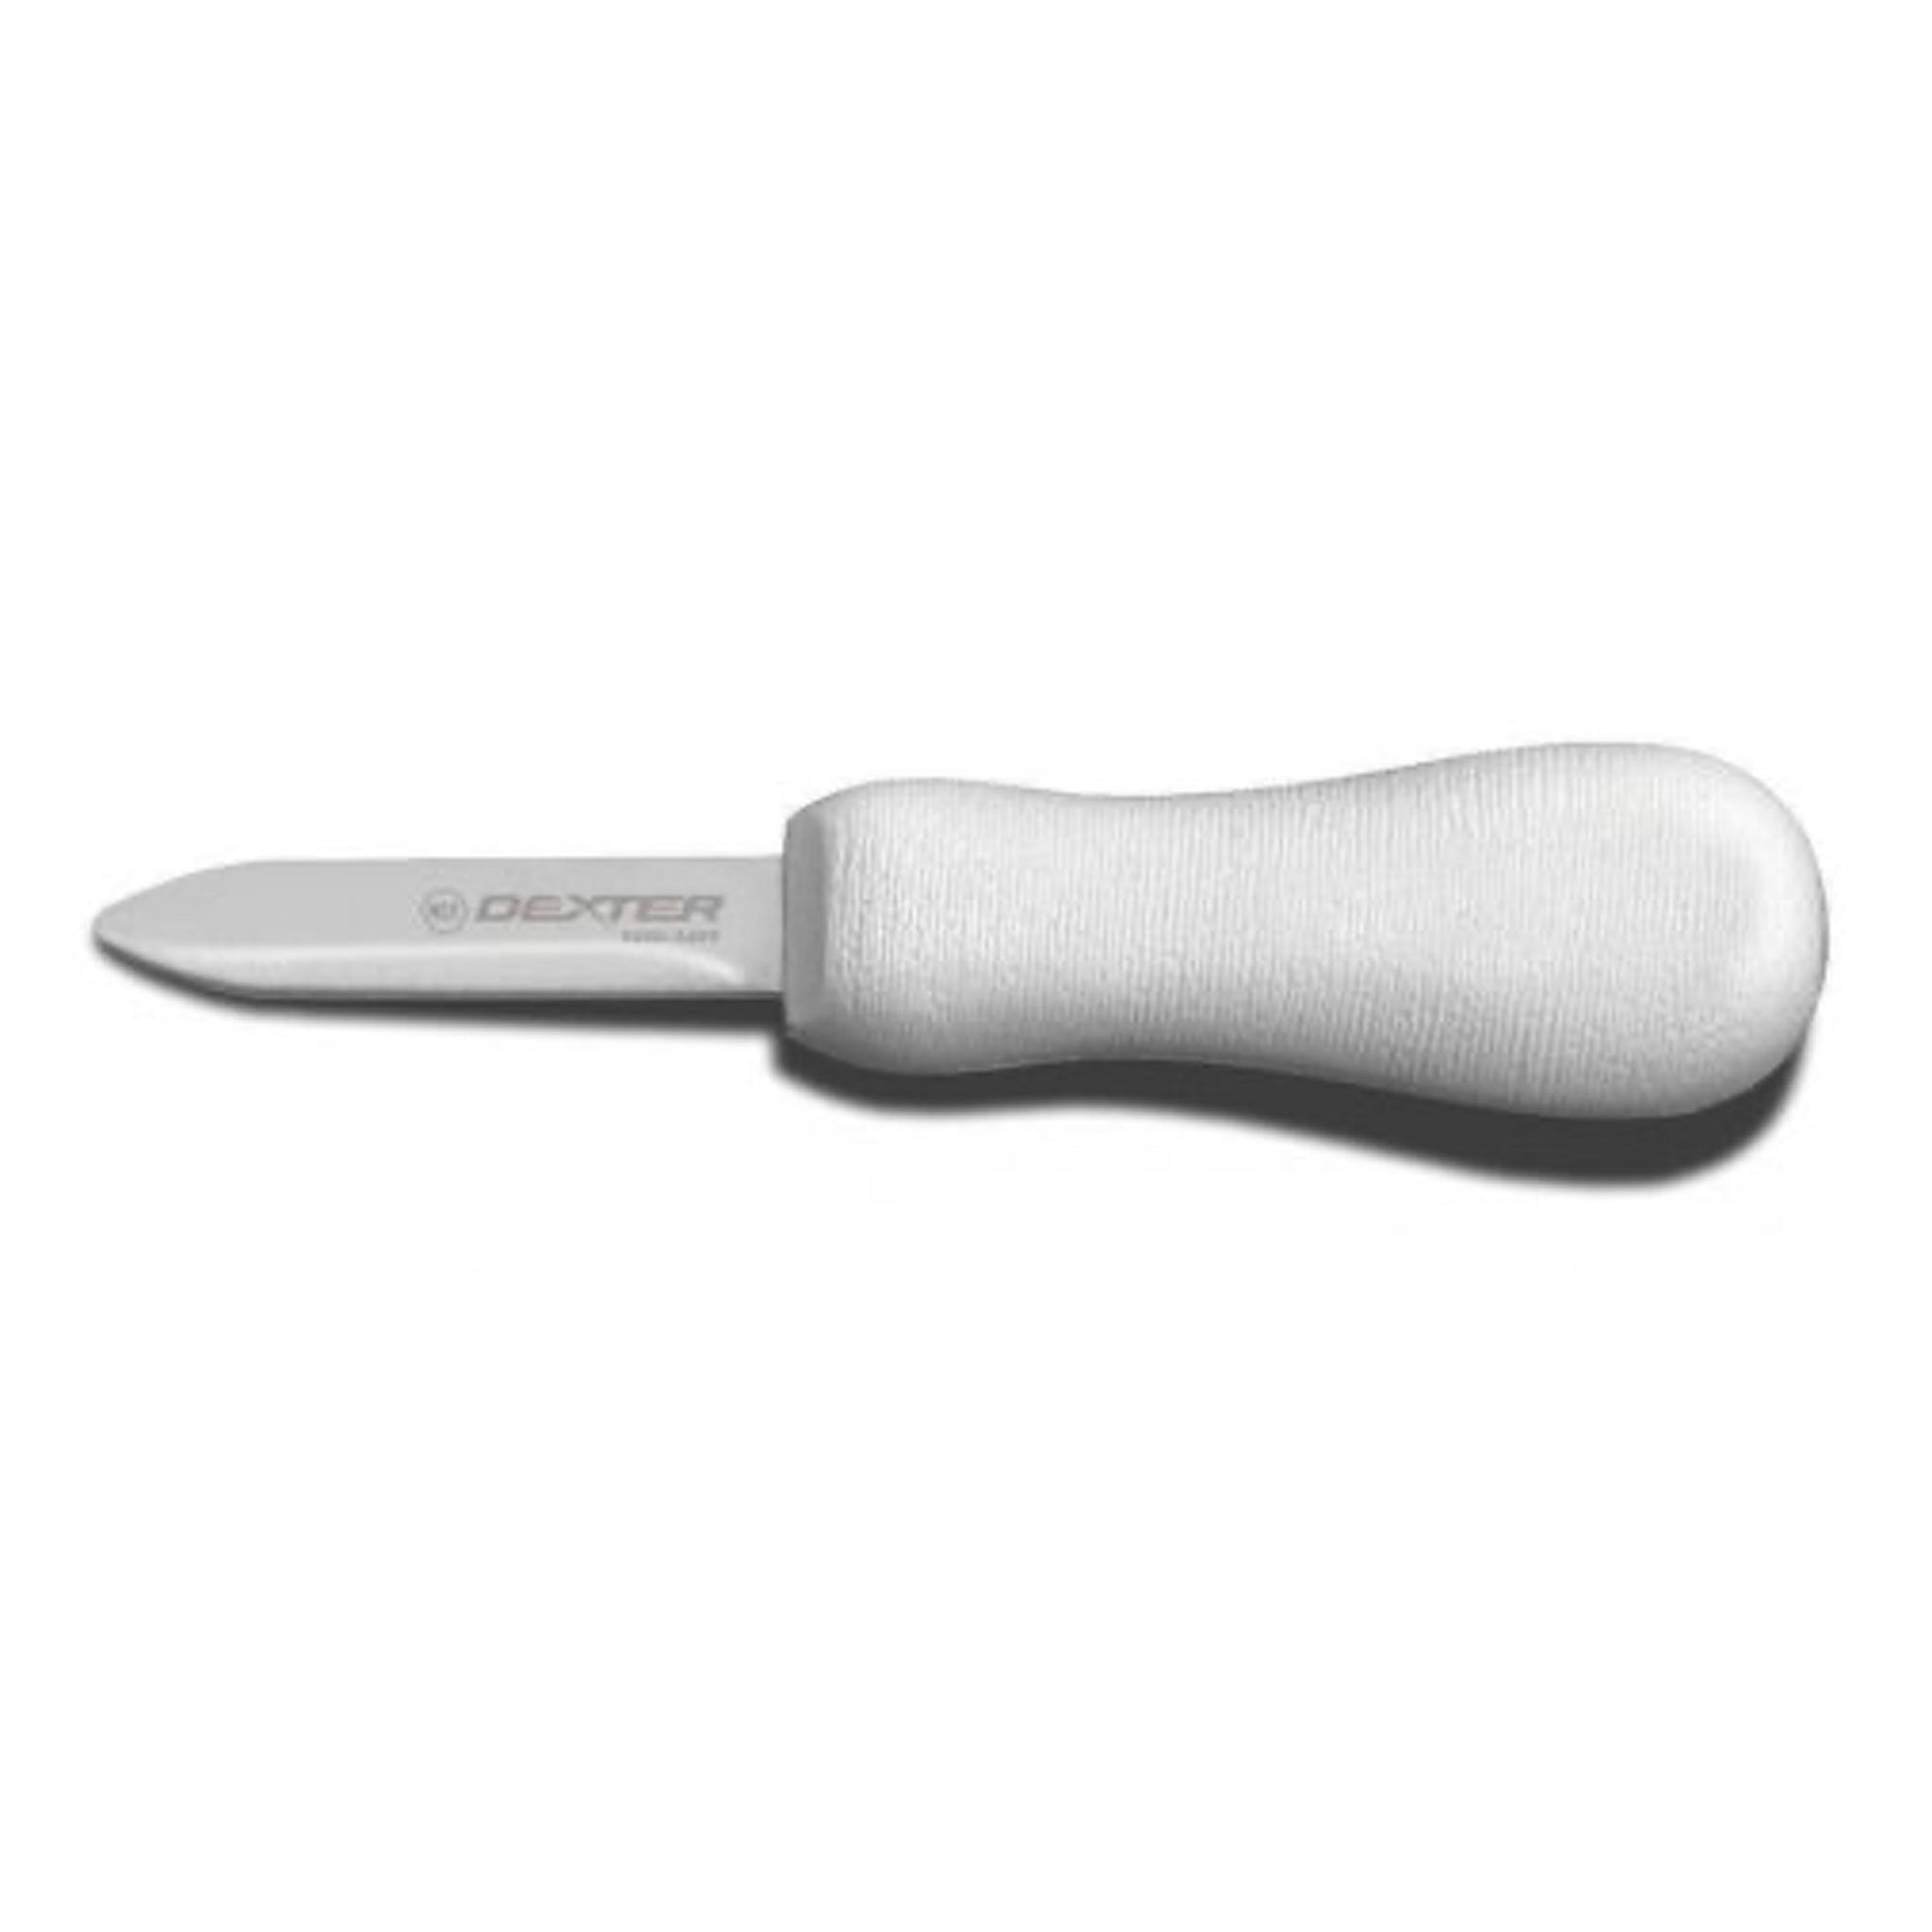 2 3/4 Inch Oyster Knife, Providence Pattern-Sani-Safe